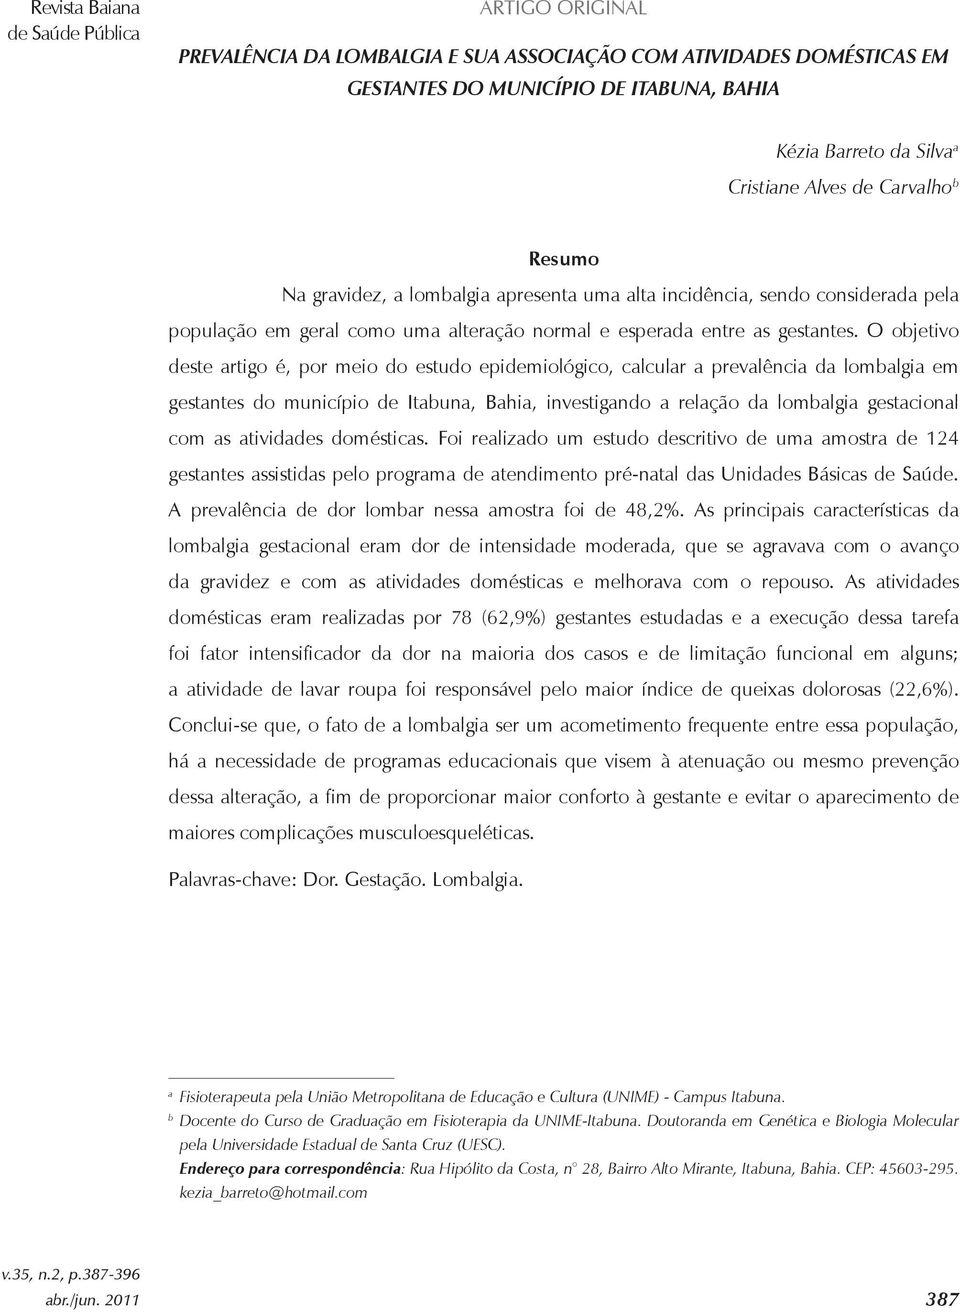 O objetivo deste artigo é, por meio do estudo epidemiológico, calcular a prevalência da lombalgia em gestantes do município de Itabuna, Bahia, investigando a relação da lombalgia gestacional com as